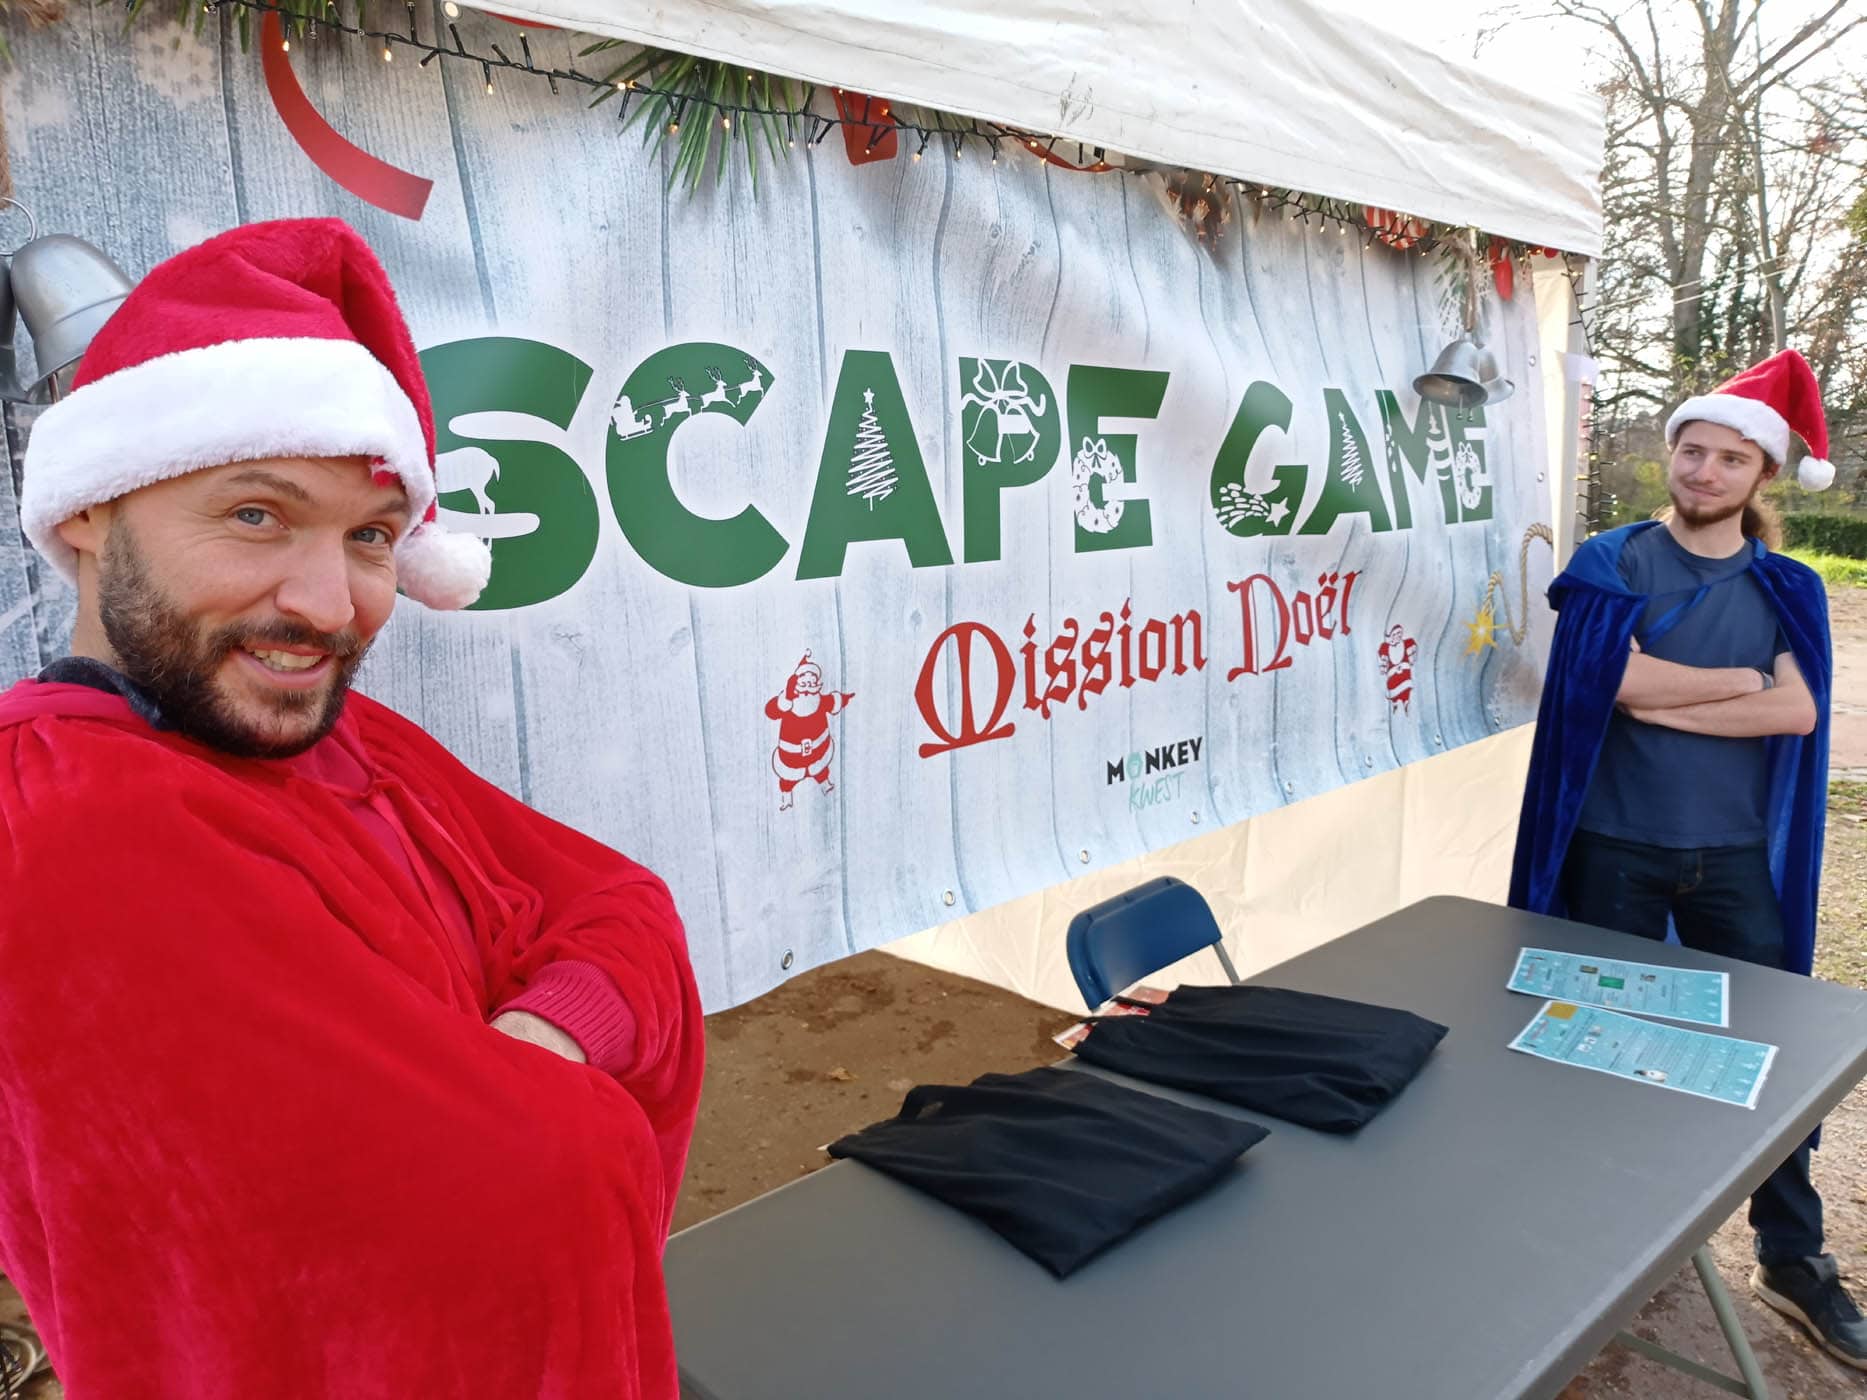 Accueil par les maitres du jeux devant l'escape game "Mission Noel"